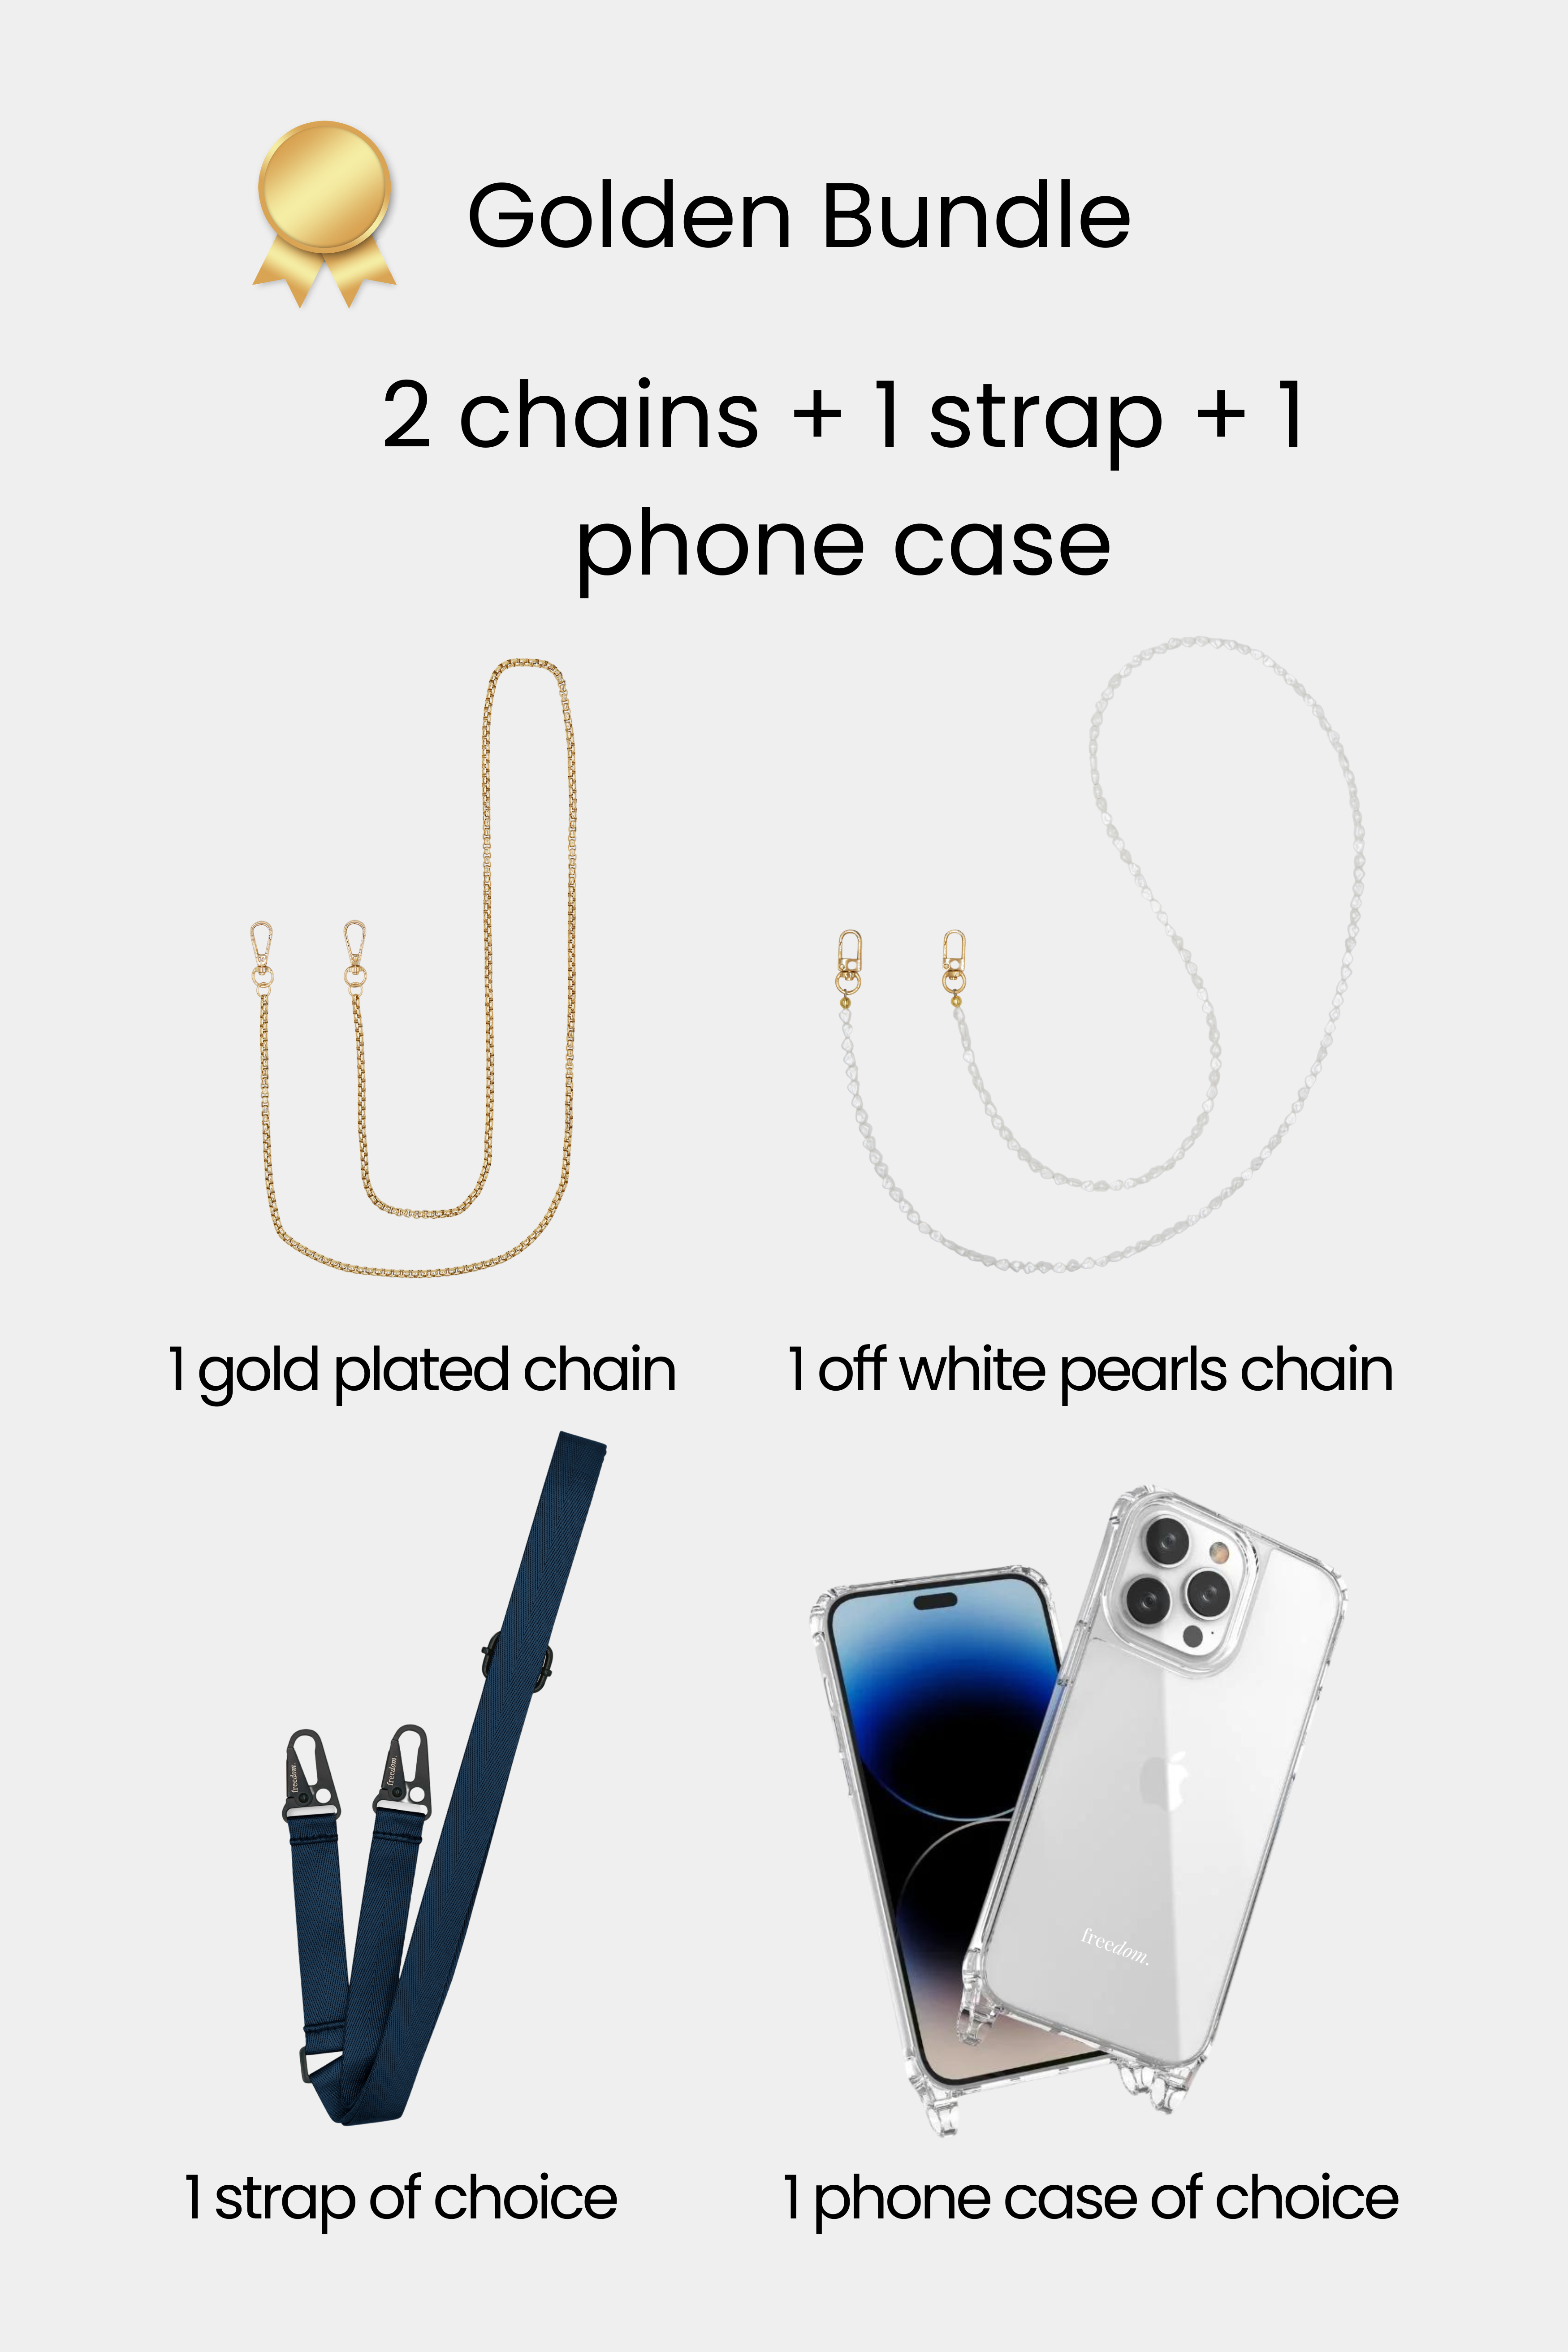 Golden Bundle - 2 chains + 1 strap + 1 phone case